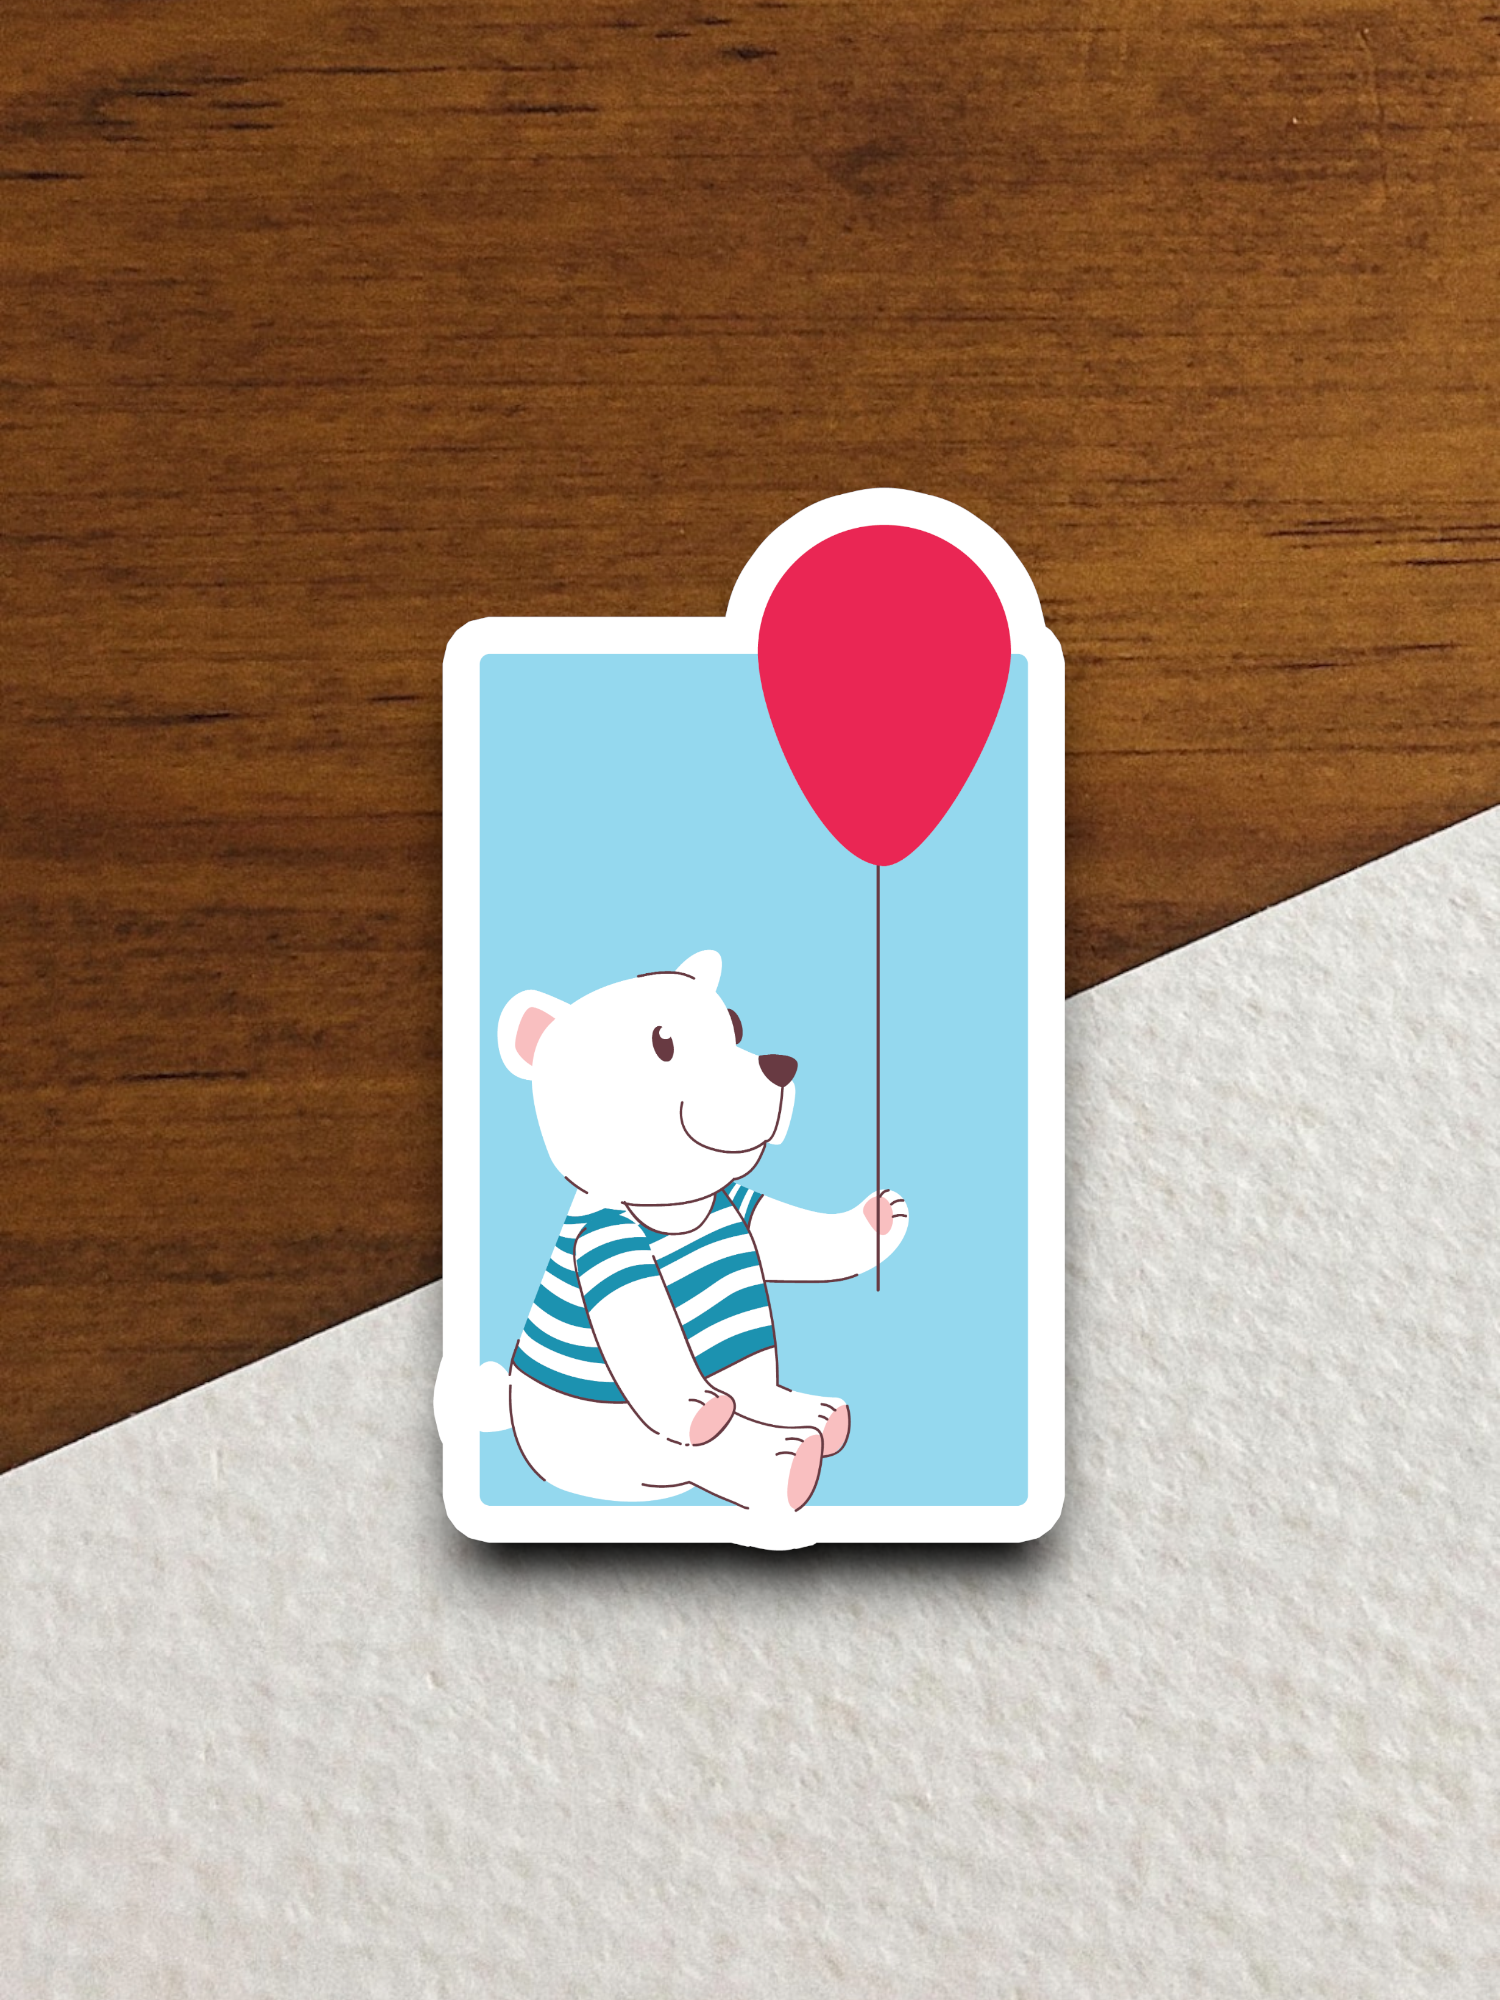 Bear with Ballon Sticker